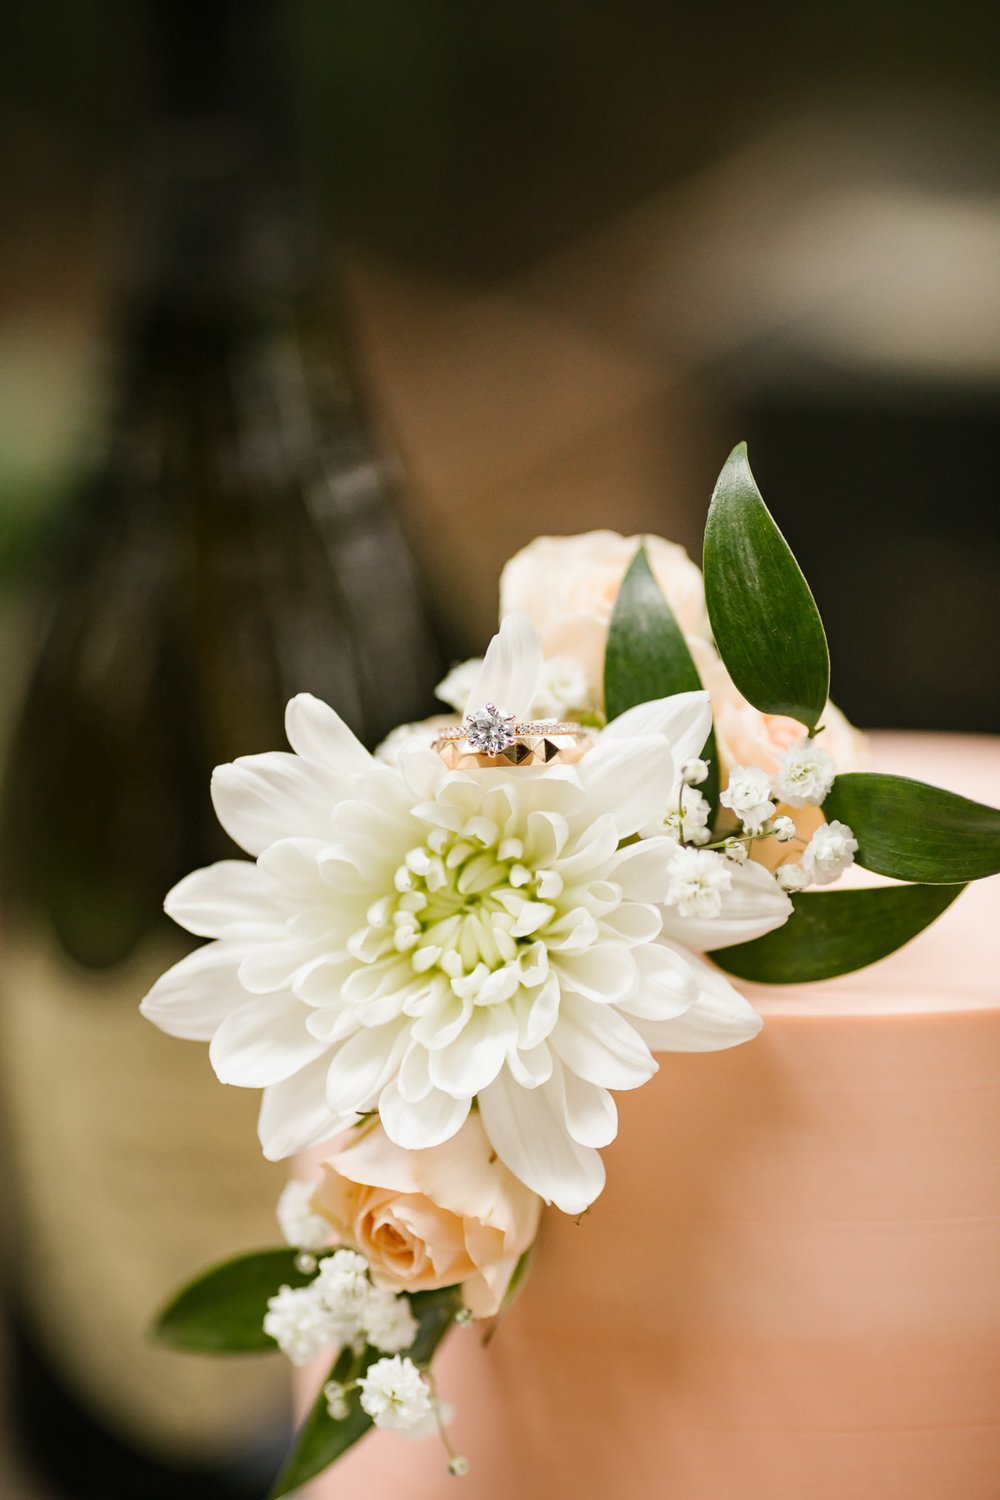 Wedding rings on flowers